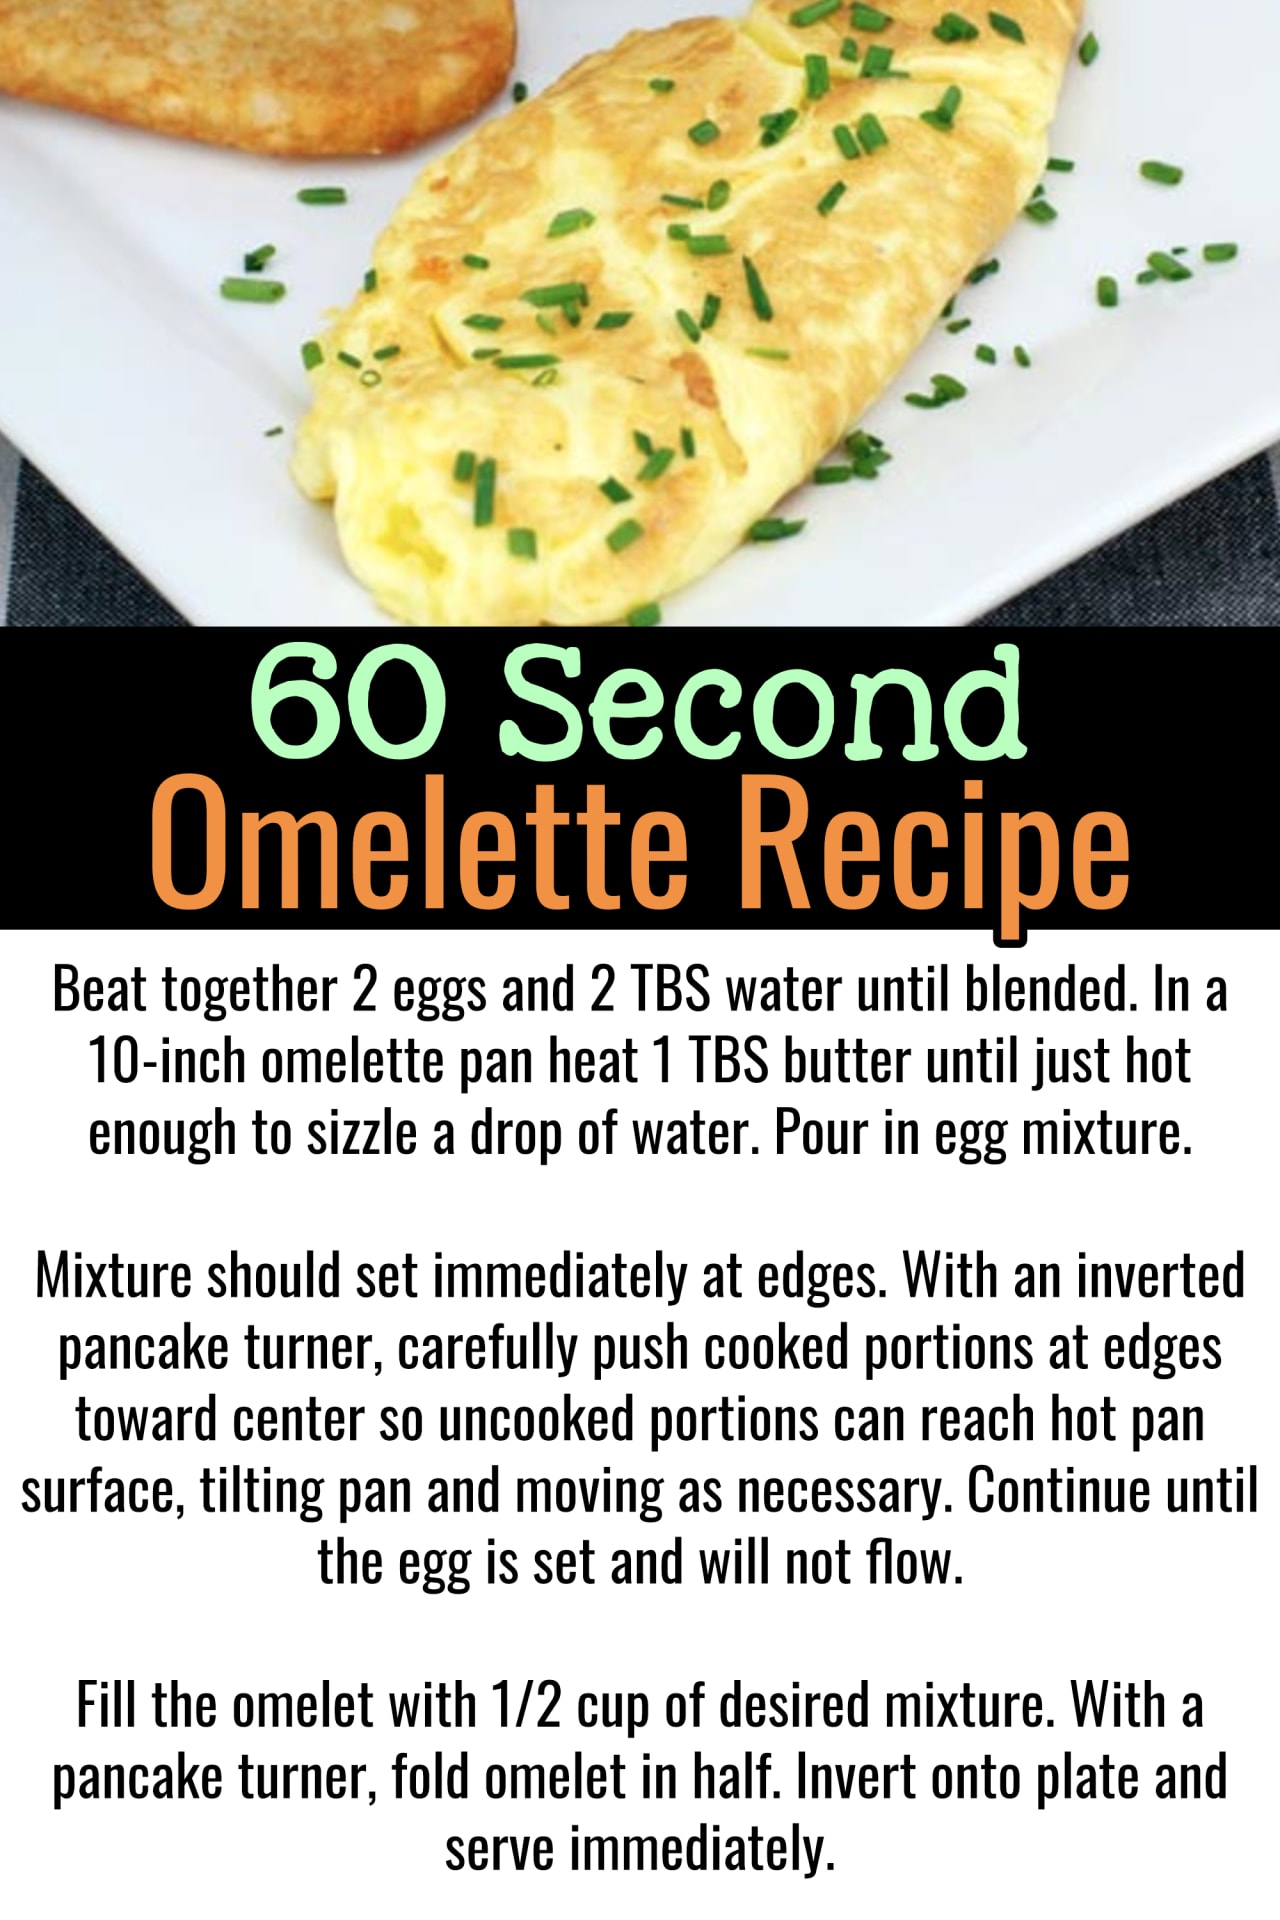 Omelette Recipes - Easy Healthy Omelette Recipes For Beginners - How to make an omelette videos - easy breakfast food ideas - best easy omelette recipes - basic omelette recipes for breakfast - 60 second omelette recipe - how to make an omelette in one minute